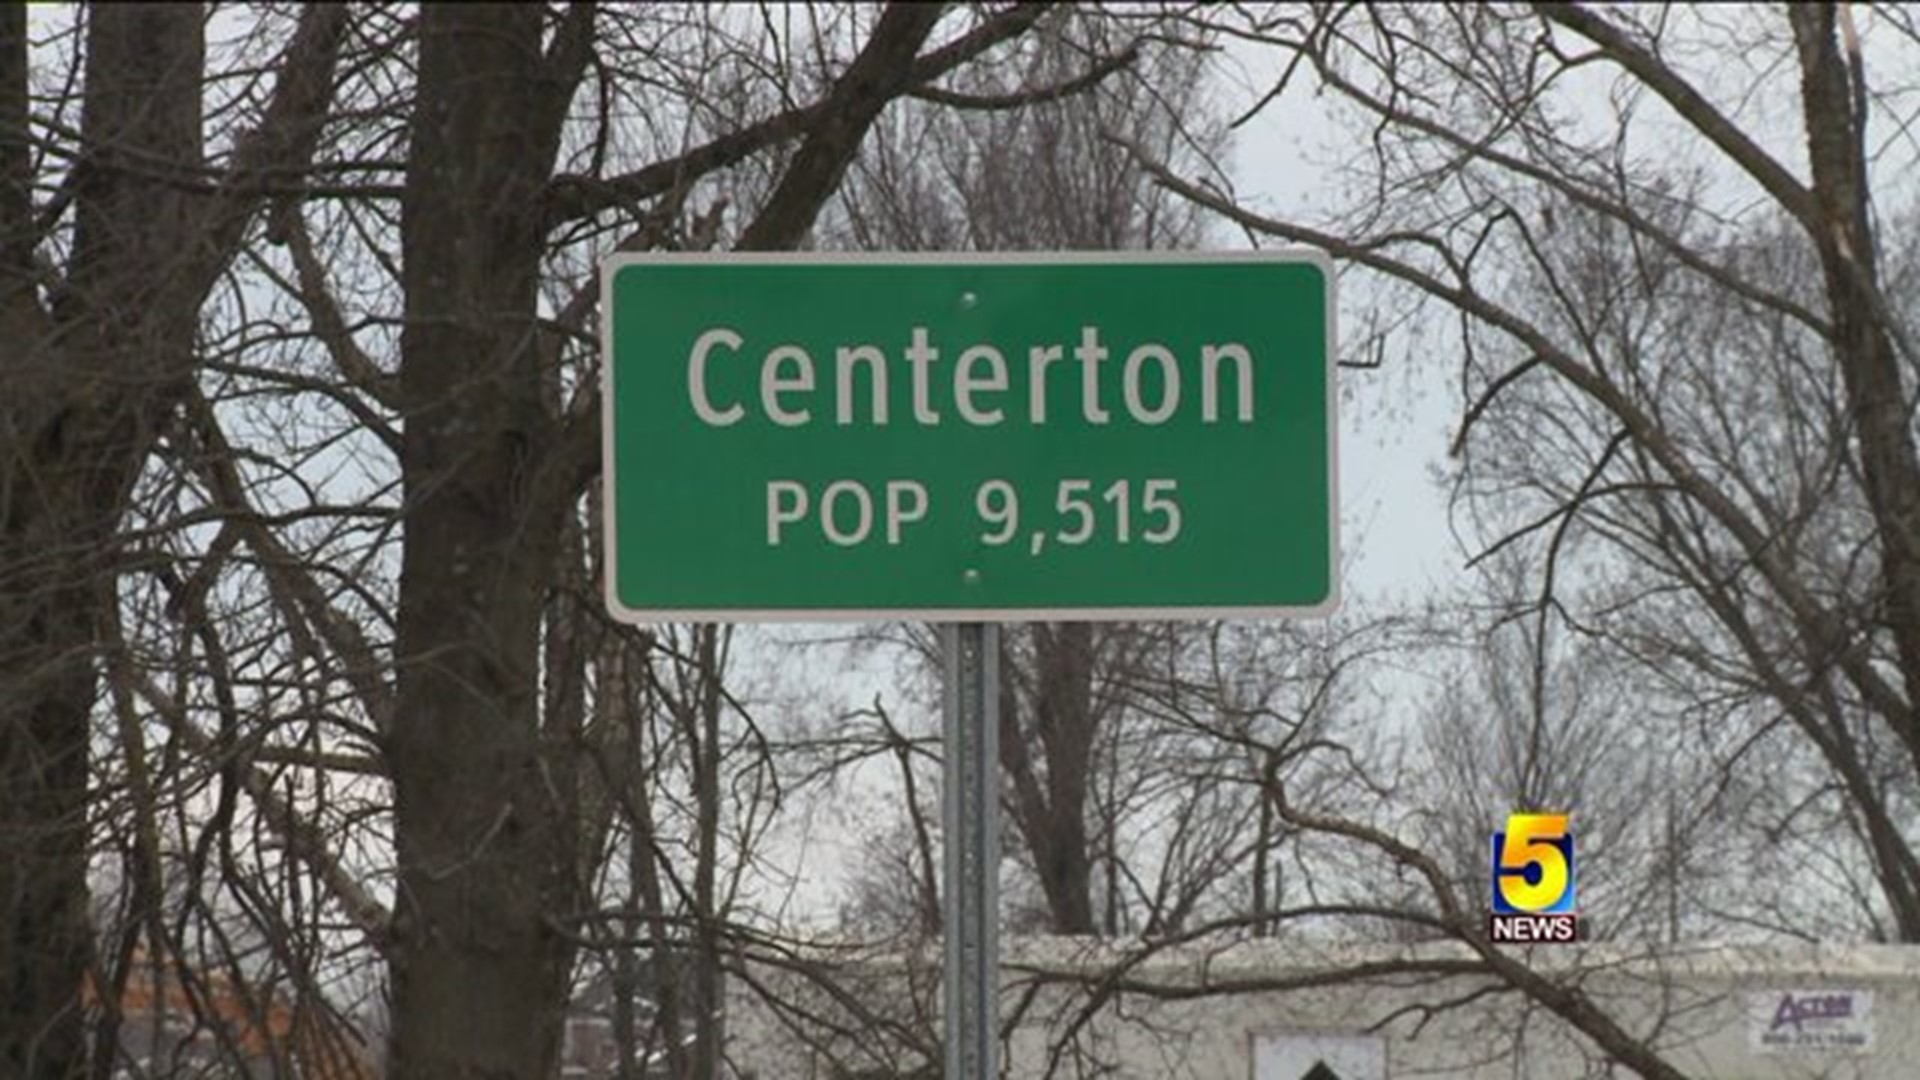 Centerton Mayor Race